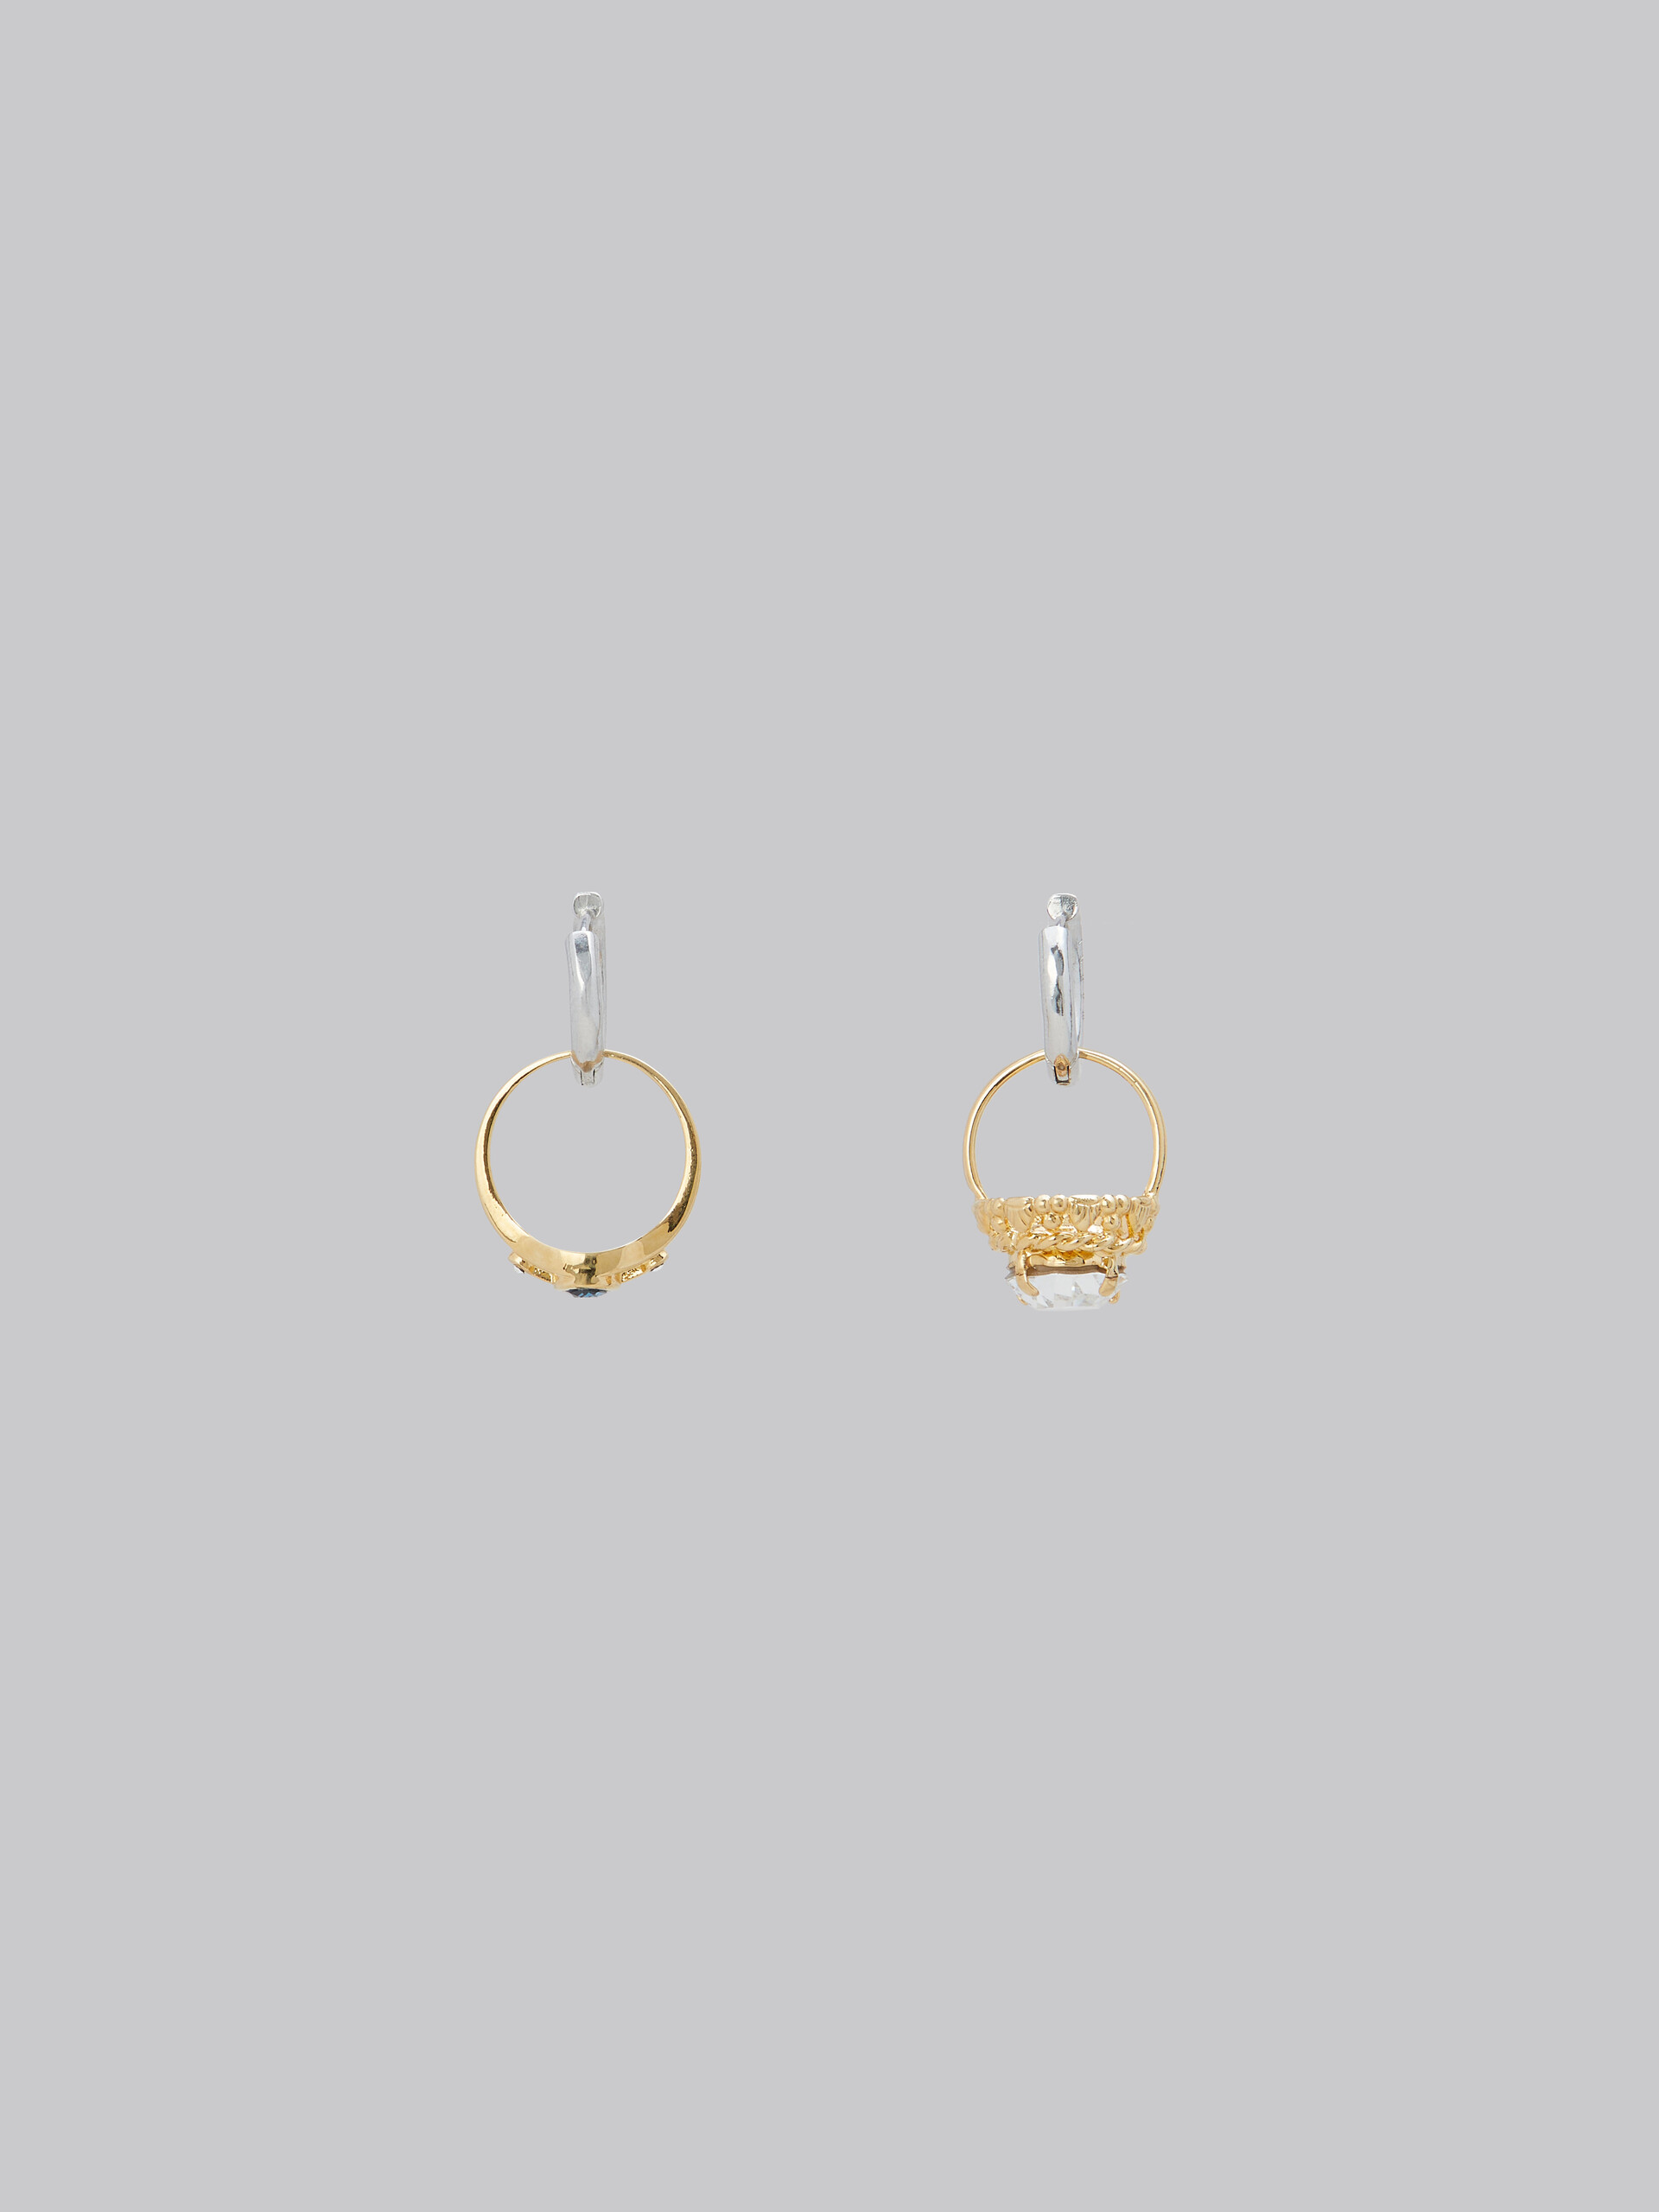 Hoop earrings with mismatched rings - Earrings - Image 3